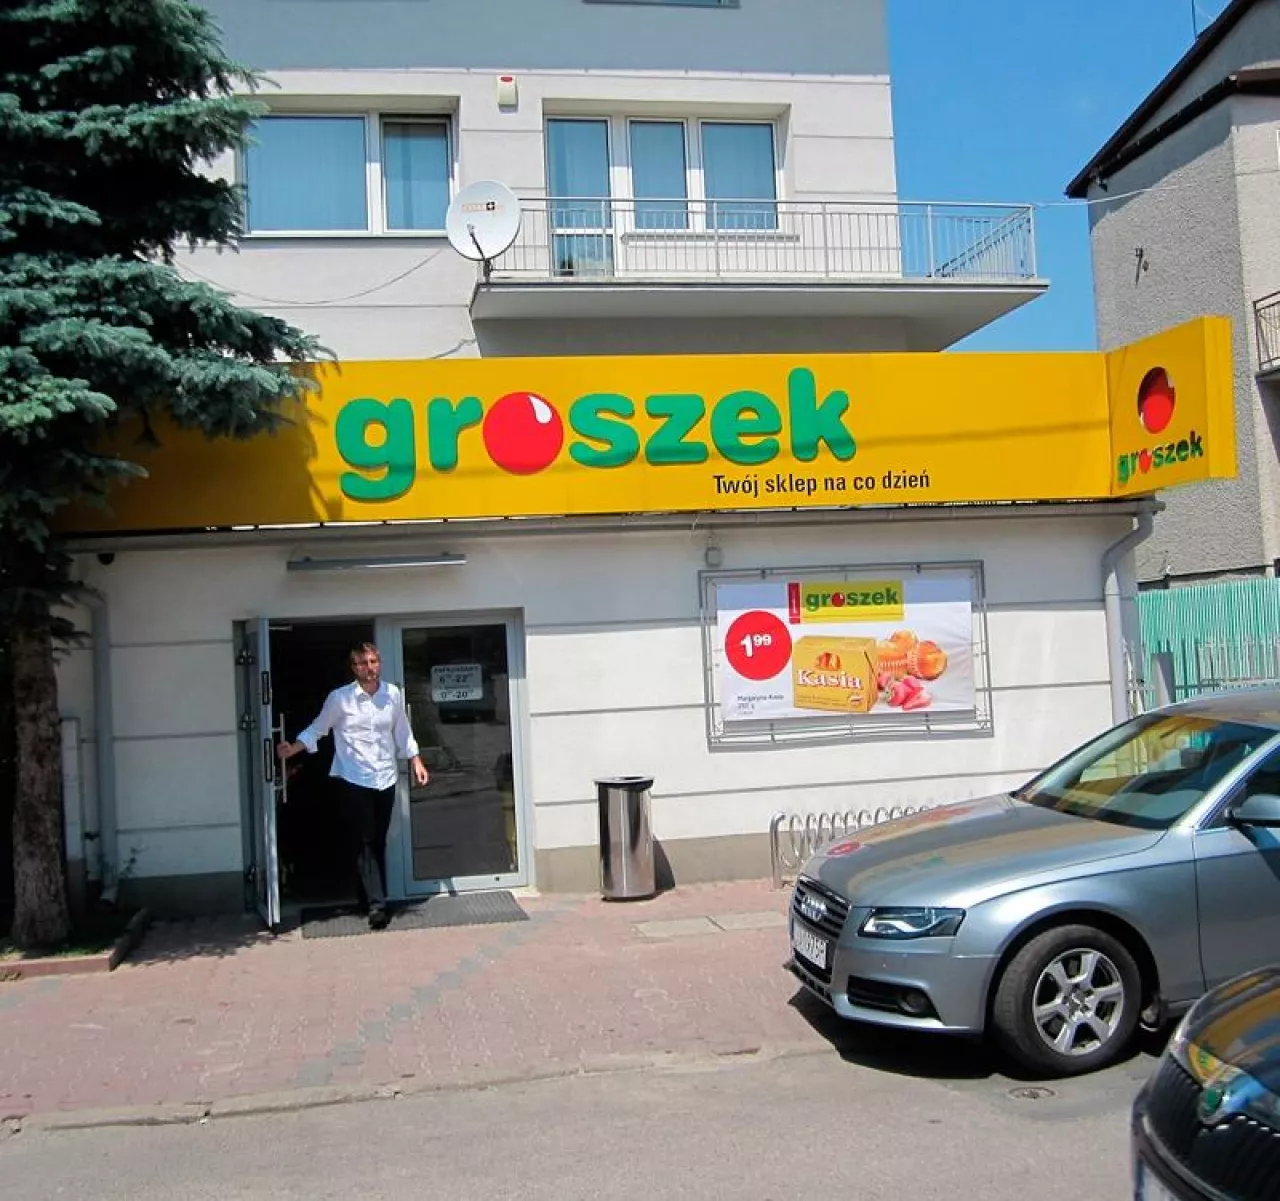 Ten lubelski Groszek zadziwia  szerokością asortymentu – 10 000 SKU,  jak w sporym supermarkecie ()